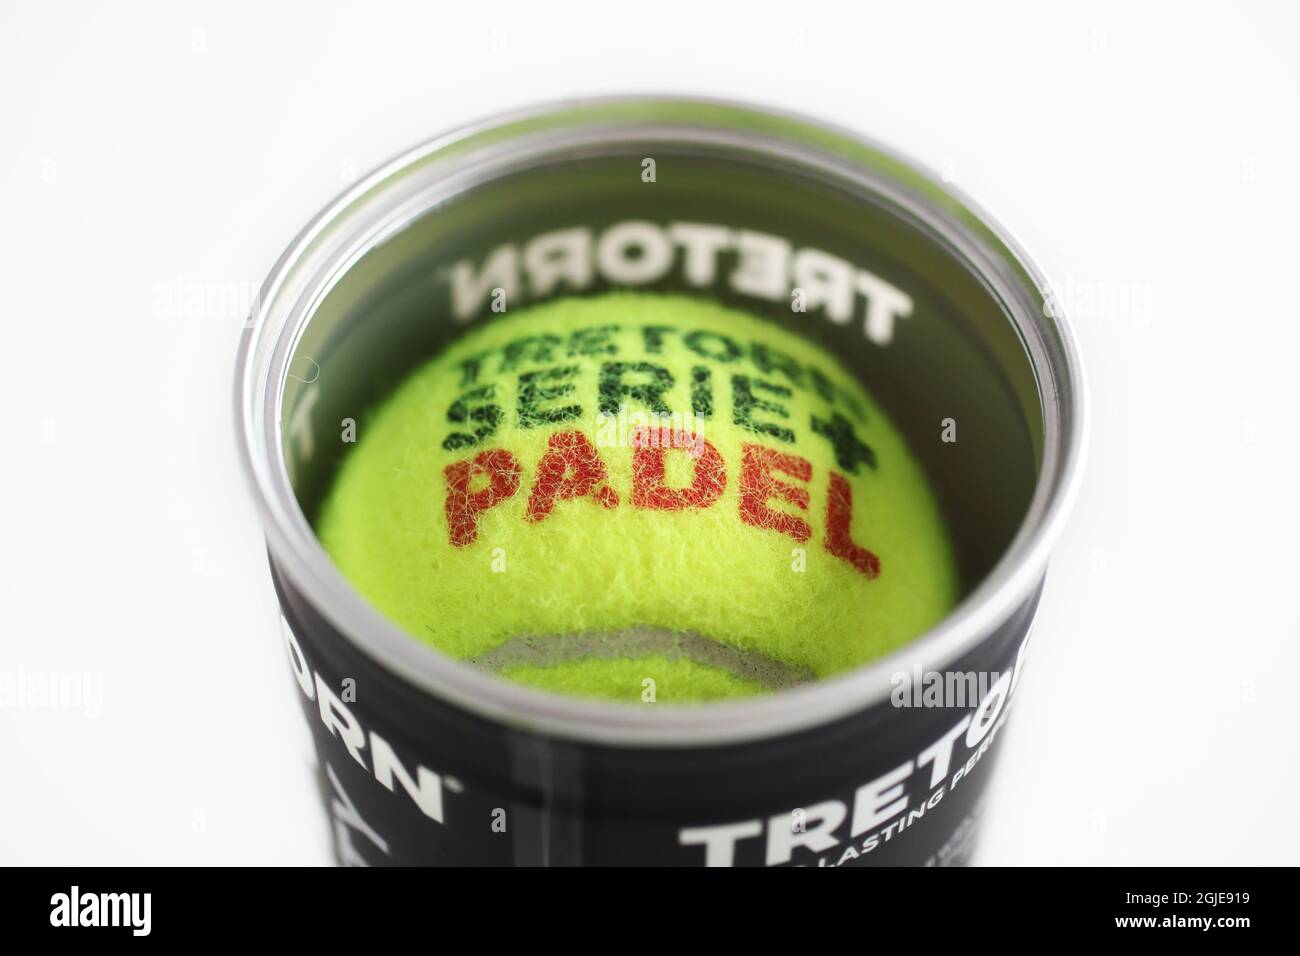 Padel ist ein Schlägersport, der die Elemente Tennis, Squash und Badminton kombiniert. Padel ist der am schnellsten wachsende Sport der Welt. Foto Jeppe Gustafsson / TT / Code 71935 Stockfoto